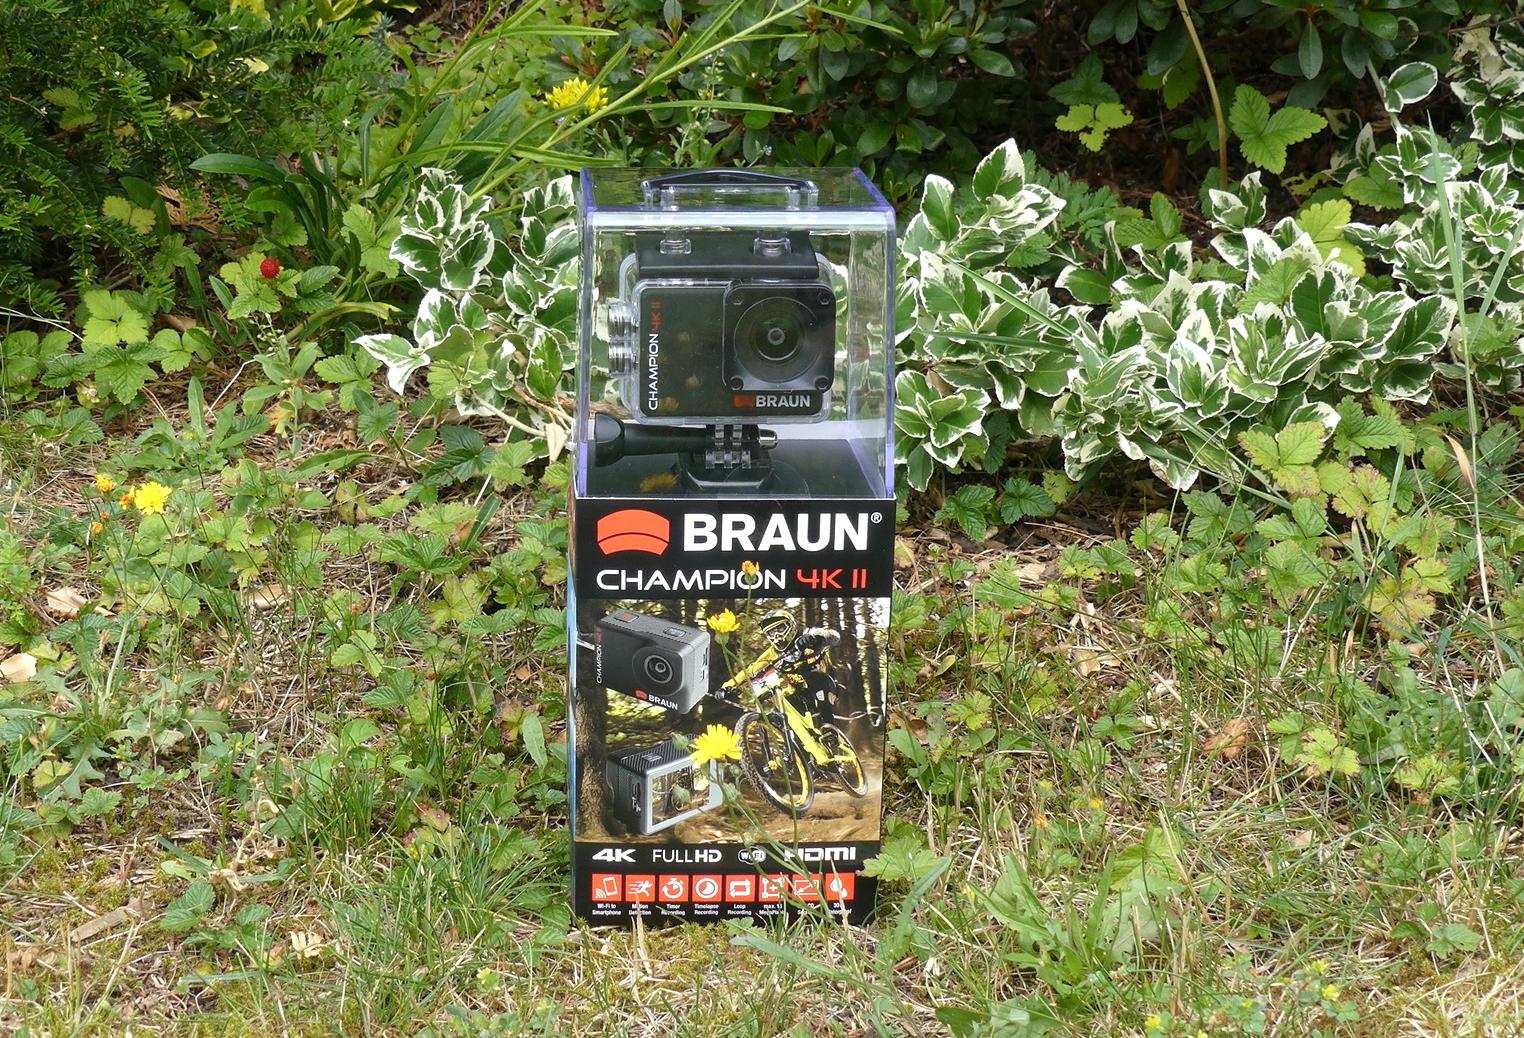 Braun Action Cam in Verpackung auf Wiese